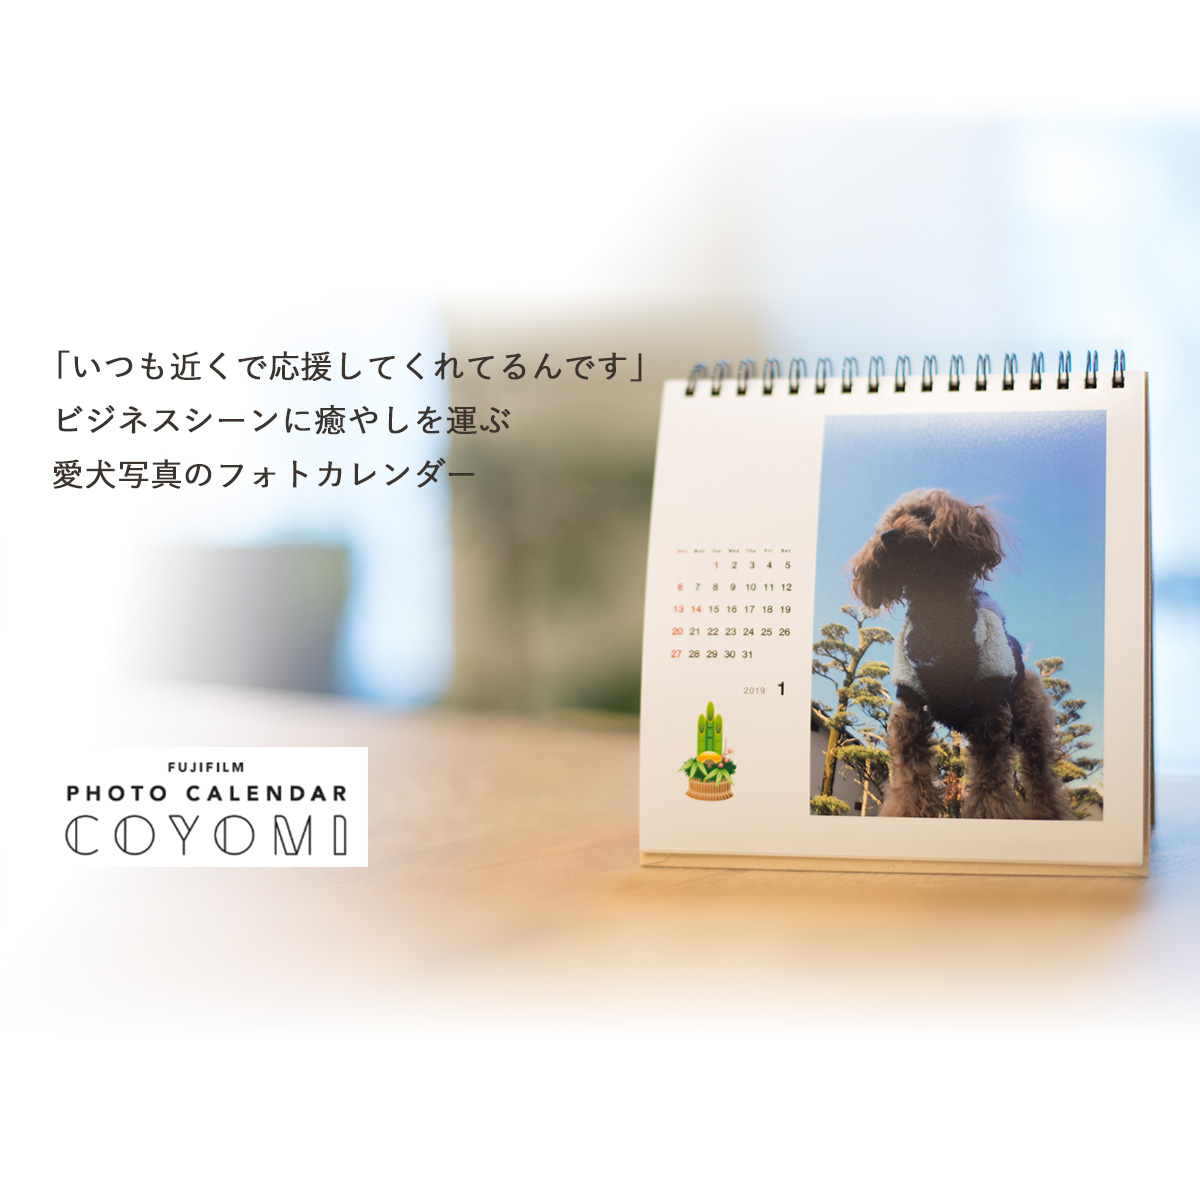 愛犬写真で作る 癒やしのフォトカレンダー 富士フイルムのフォトカレンダー23